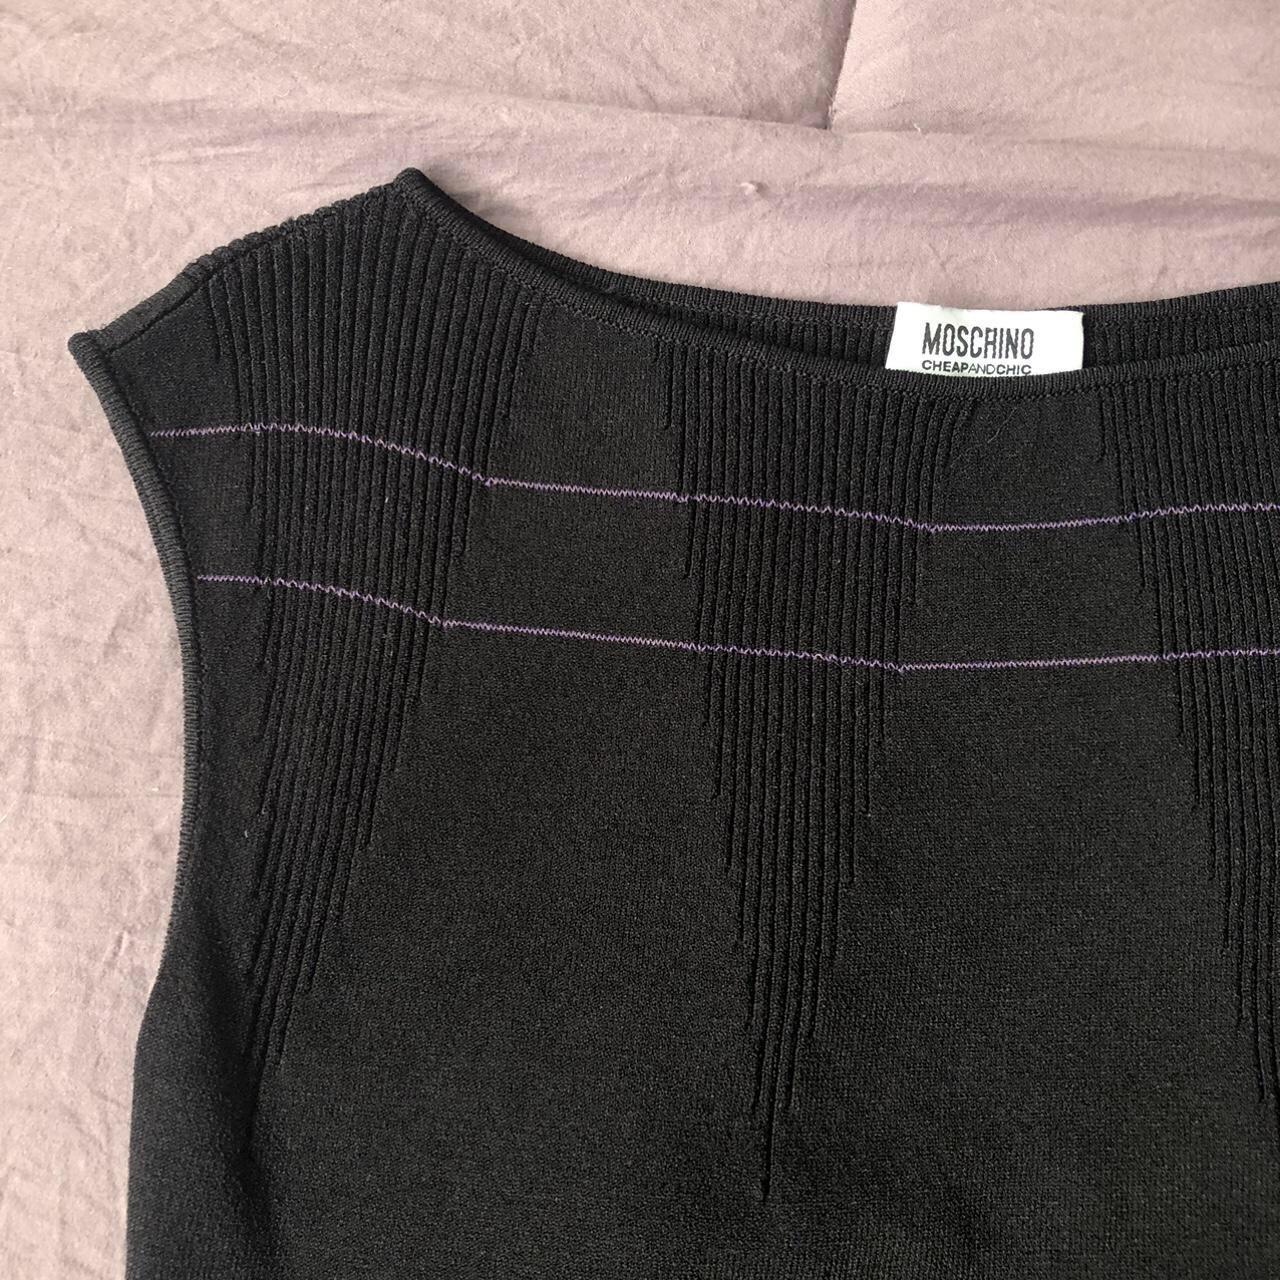 Moschino Cheap & Chic Women's Black and Purple Shirt (2)